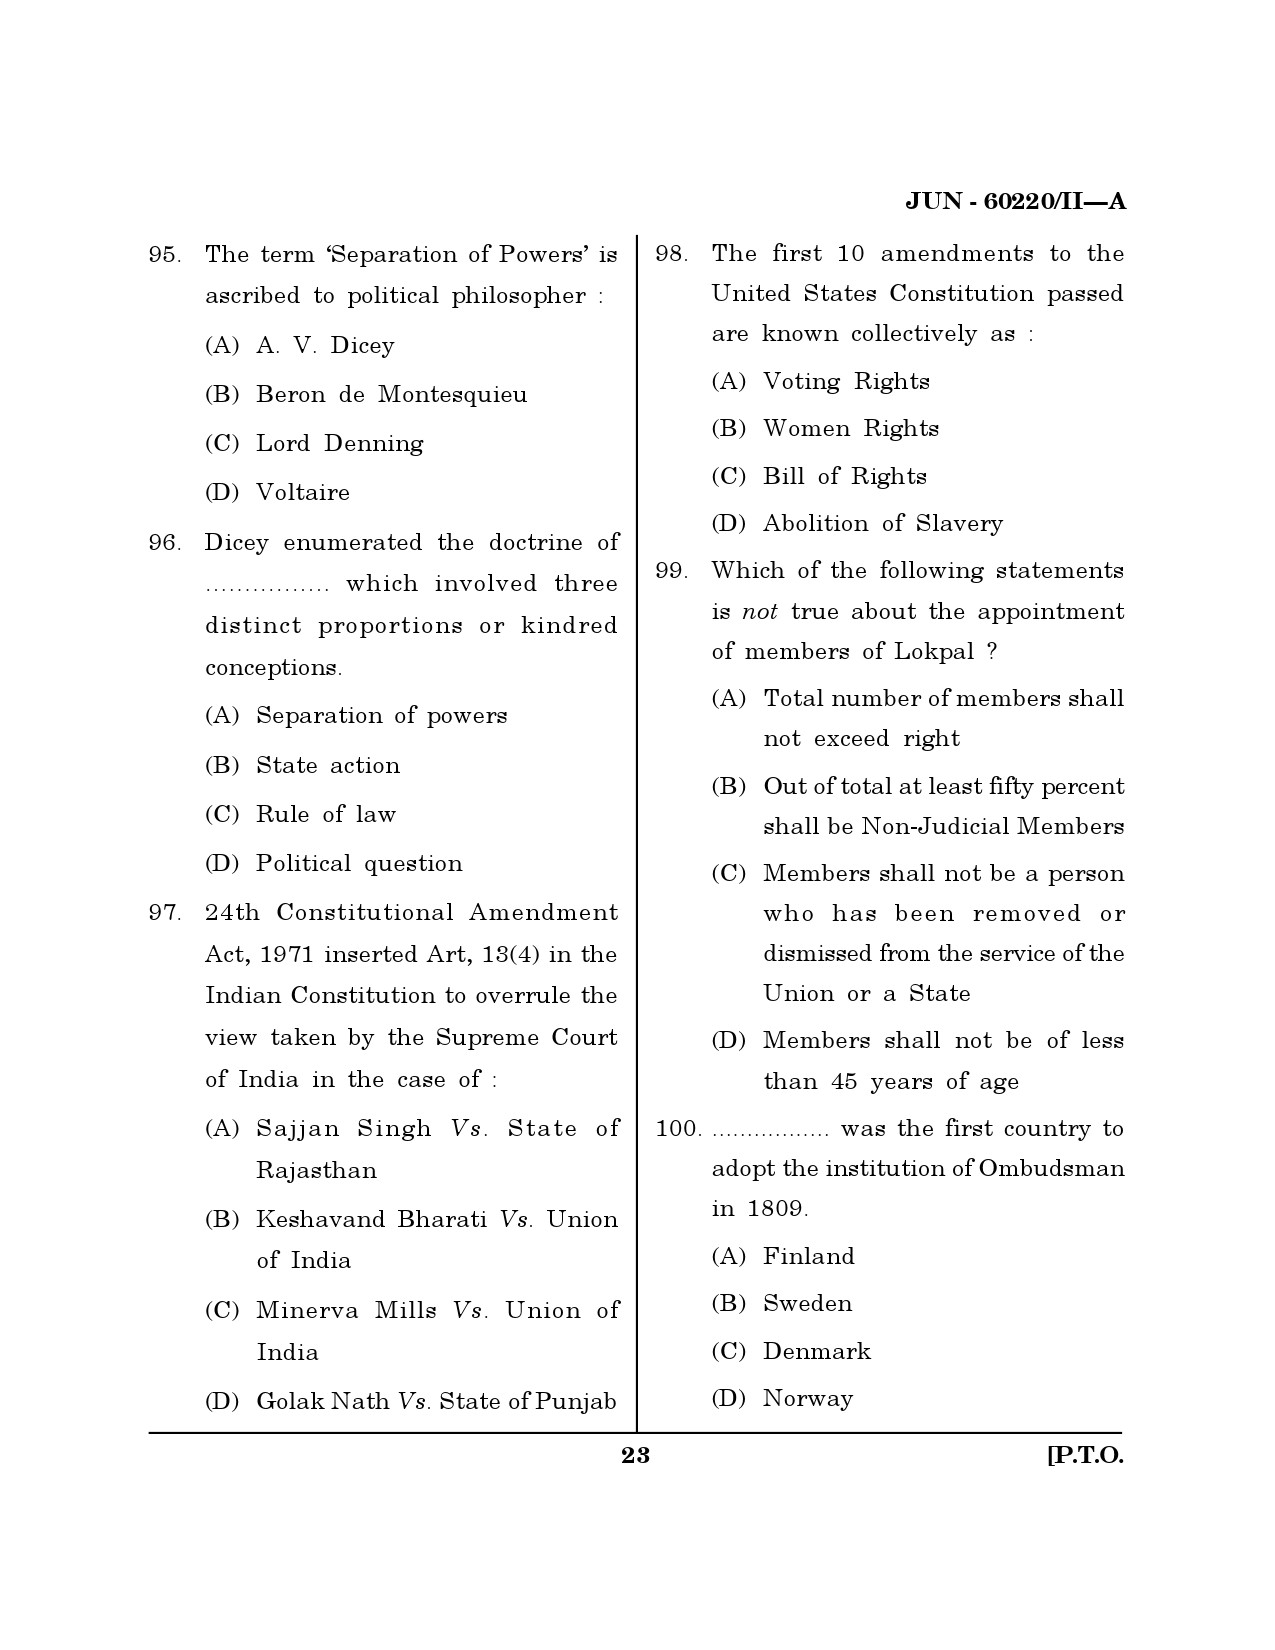 Maharashtra SET Law Question Paper II June 2020 22